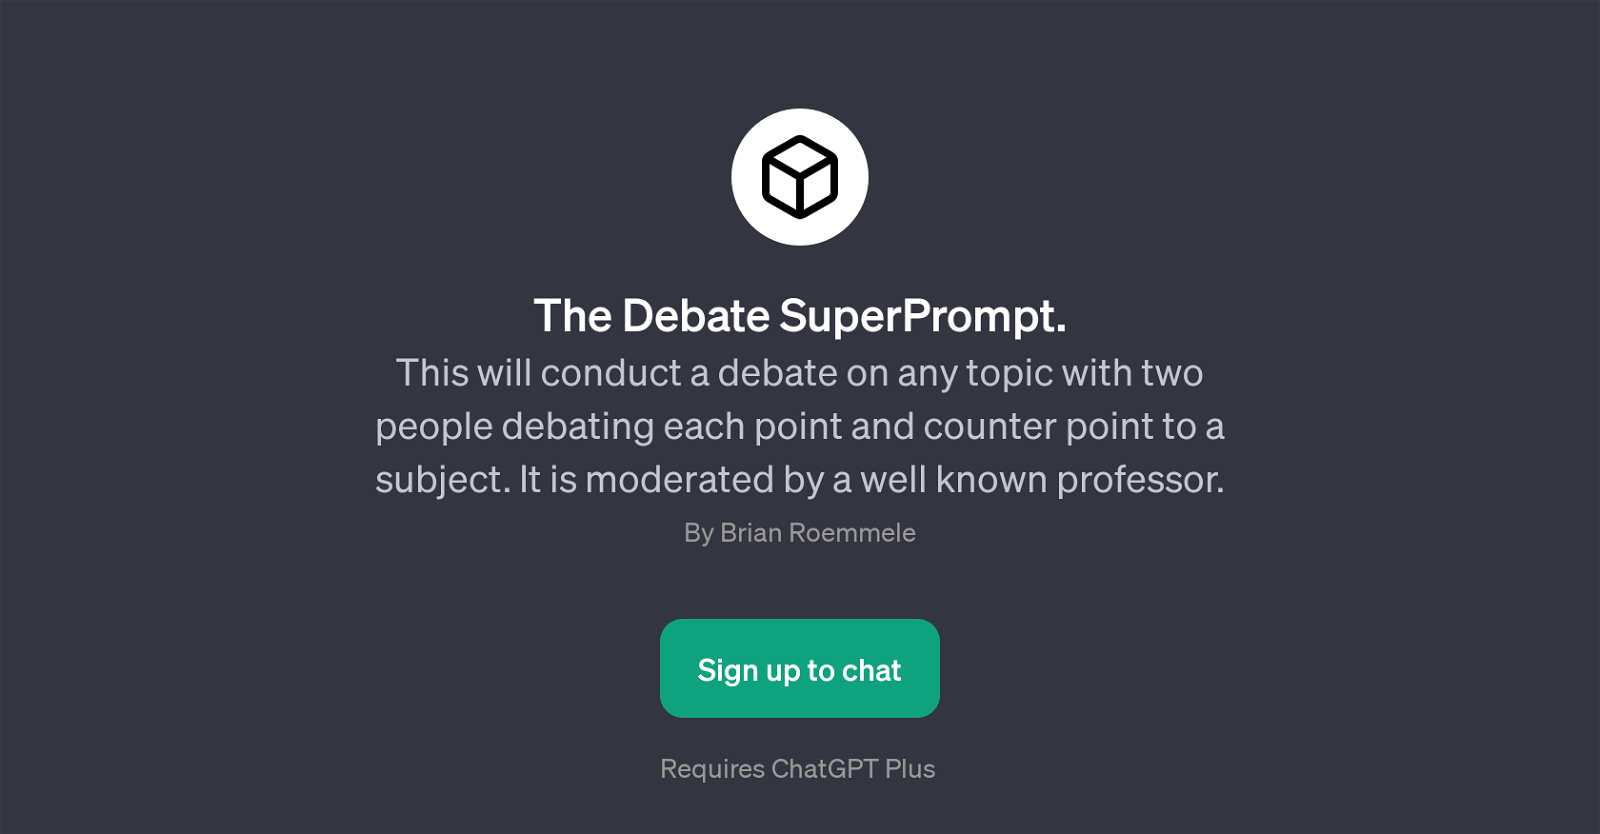 The Debate SuperPrompt website